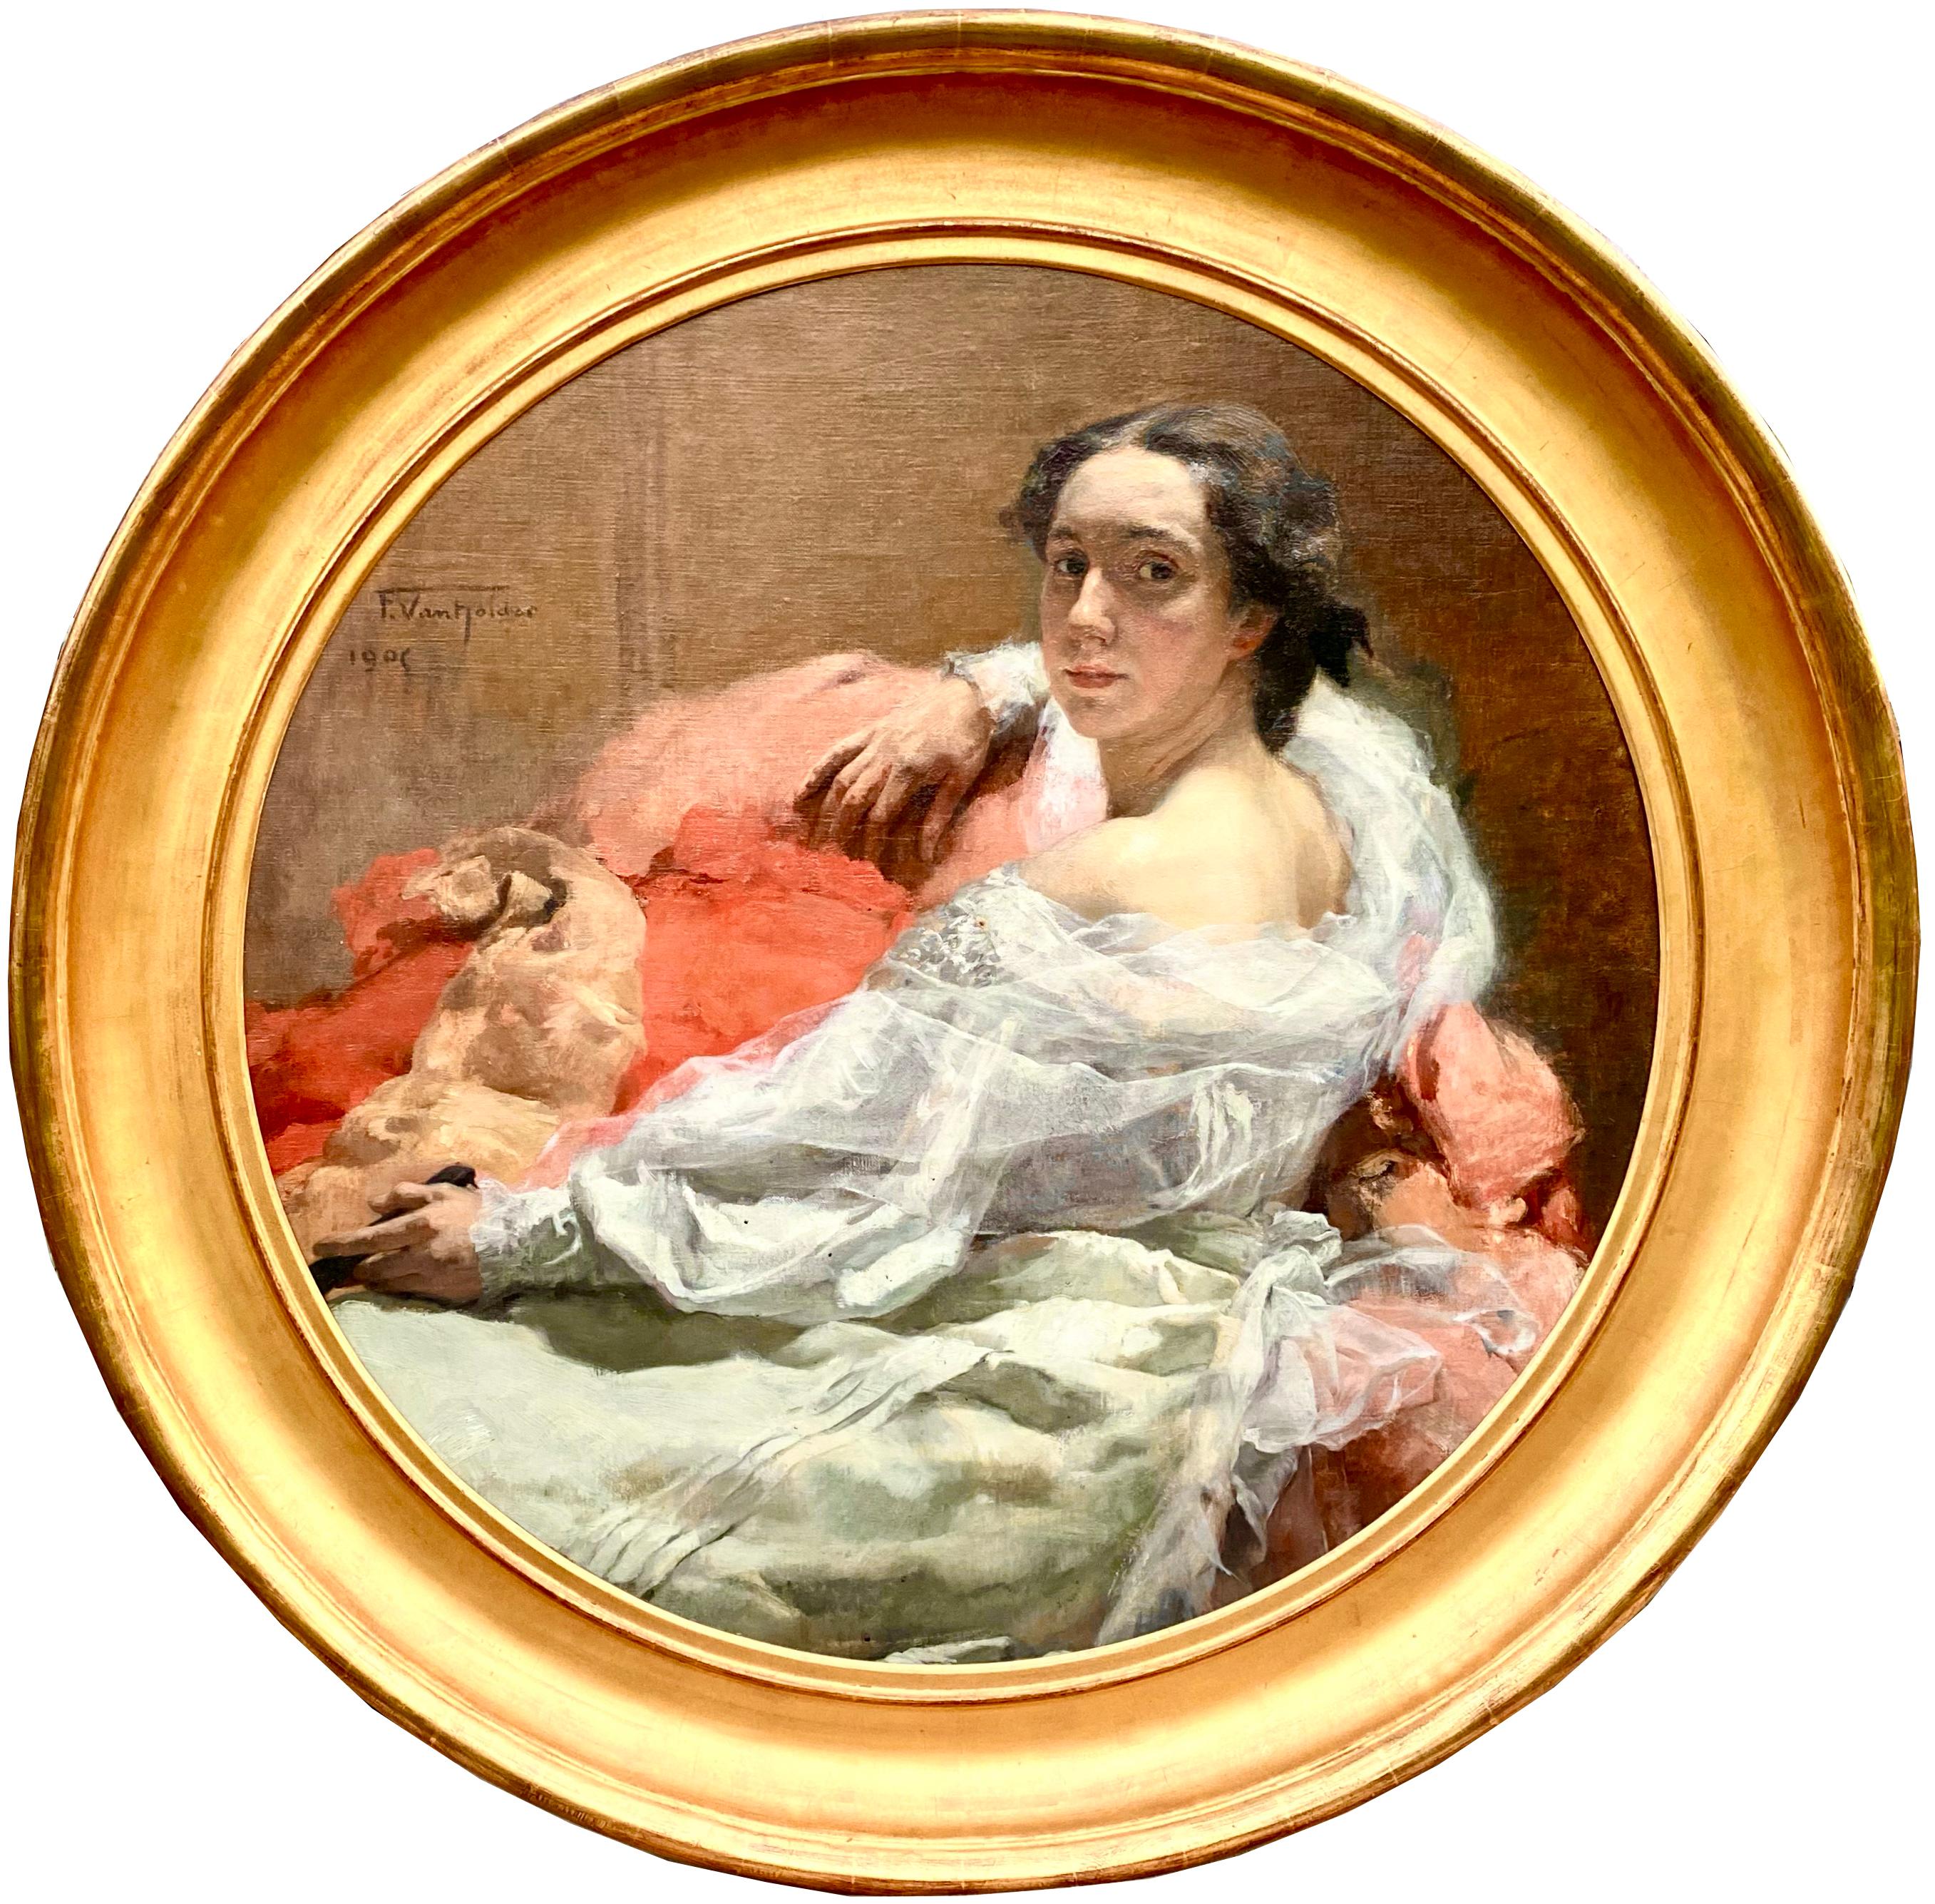 Frans Van Holder
Ixelles 1881 - 1919 Genève
Peintre belge

Portrait d'une jeune femme en blanc - La femme de l'artiste".
Signature : Signée en haut à gauche et datée 1906
Médium : Huile sur toile
Dimensions : diamètre : taille de l'image 96 cm,